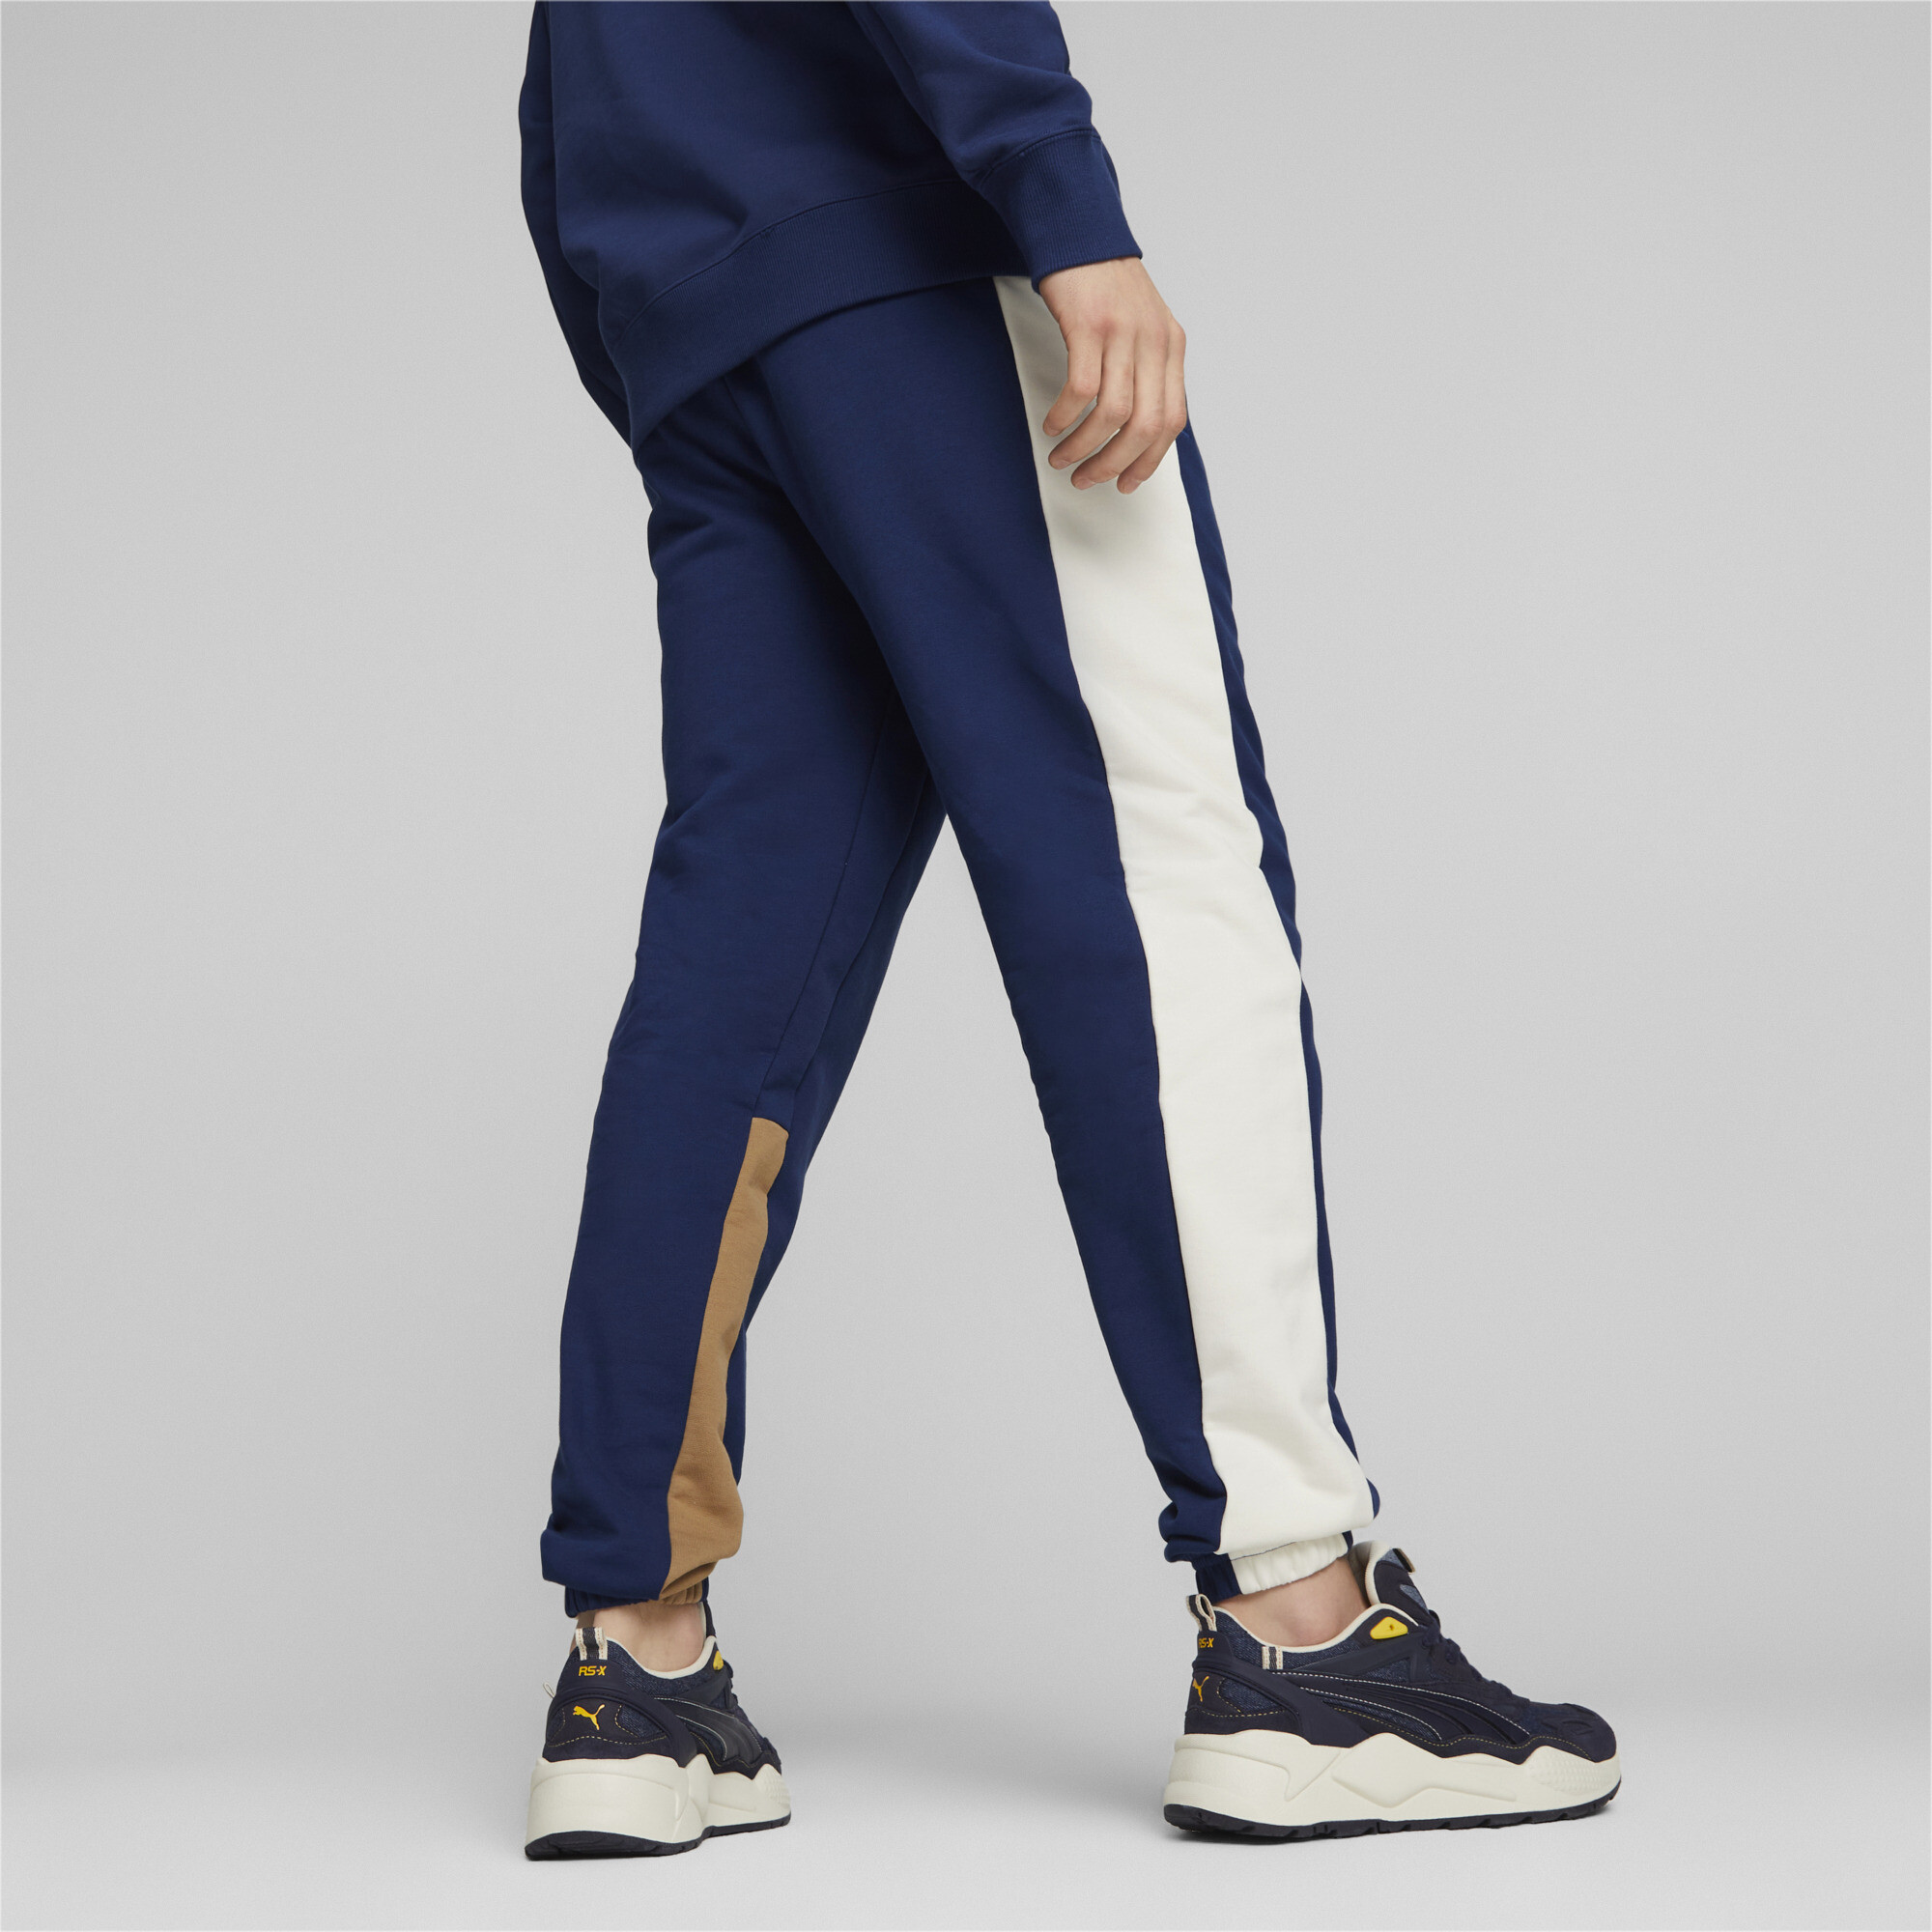 Men's Puma Classics Block's Sweatpants, Blue, Size XXL, Clothing